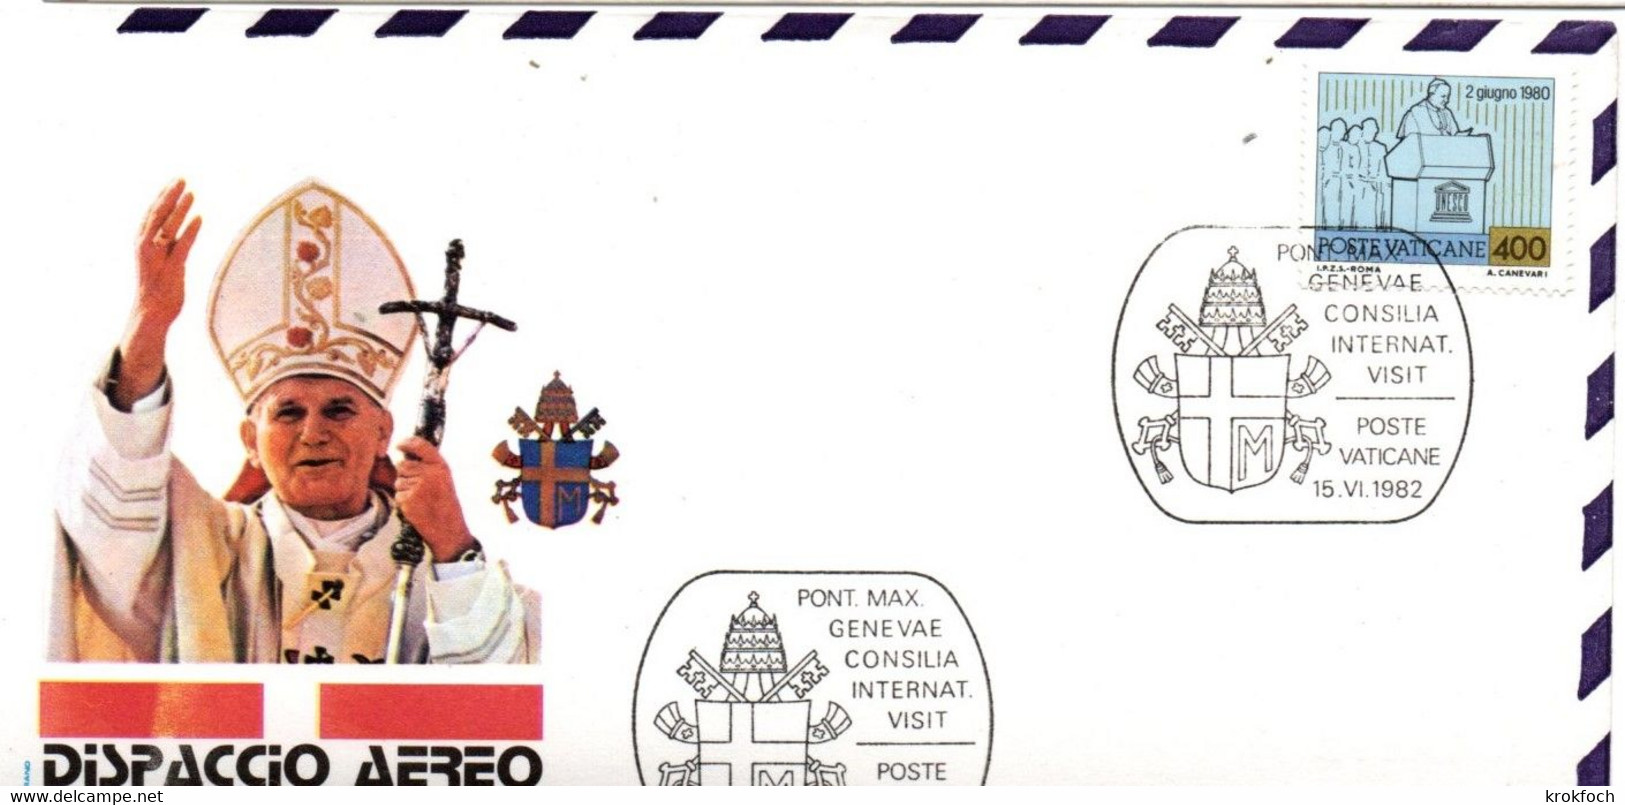 Visite Pape Juan Pablo Jean-Paul II 1982 - Genève Ginevra Genf Suisse - JP II - Macchine Per Obliterare (EMA)